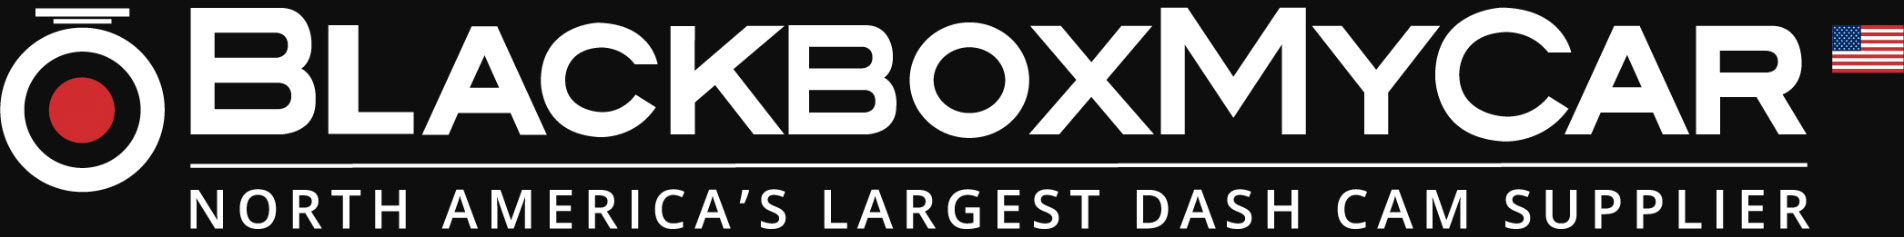 BlackboxMyCar Logo